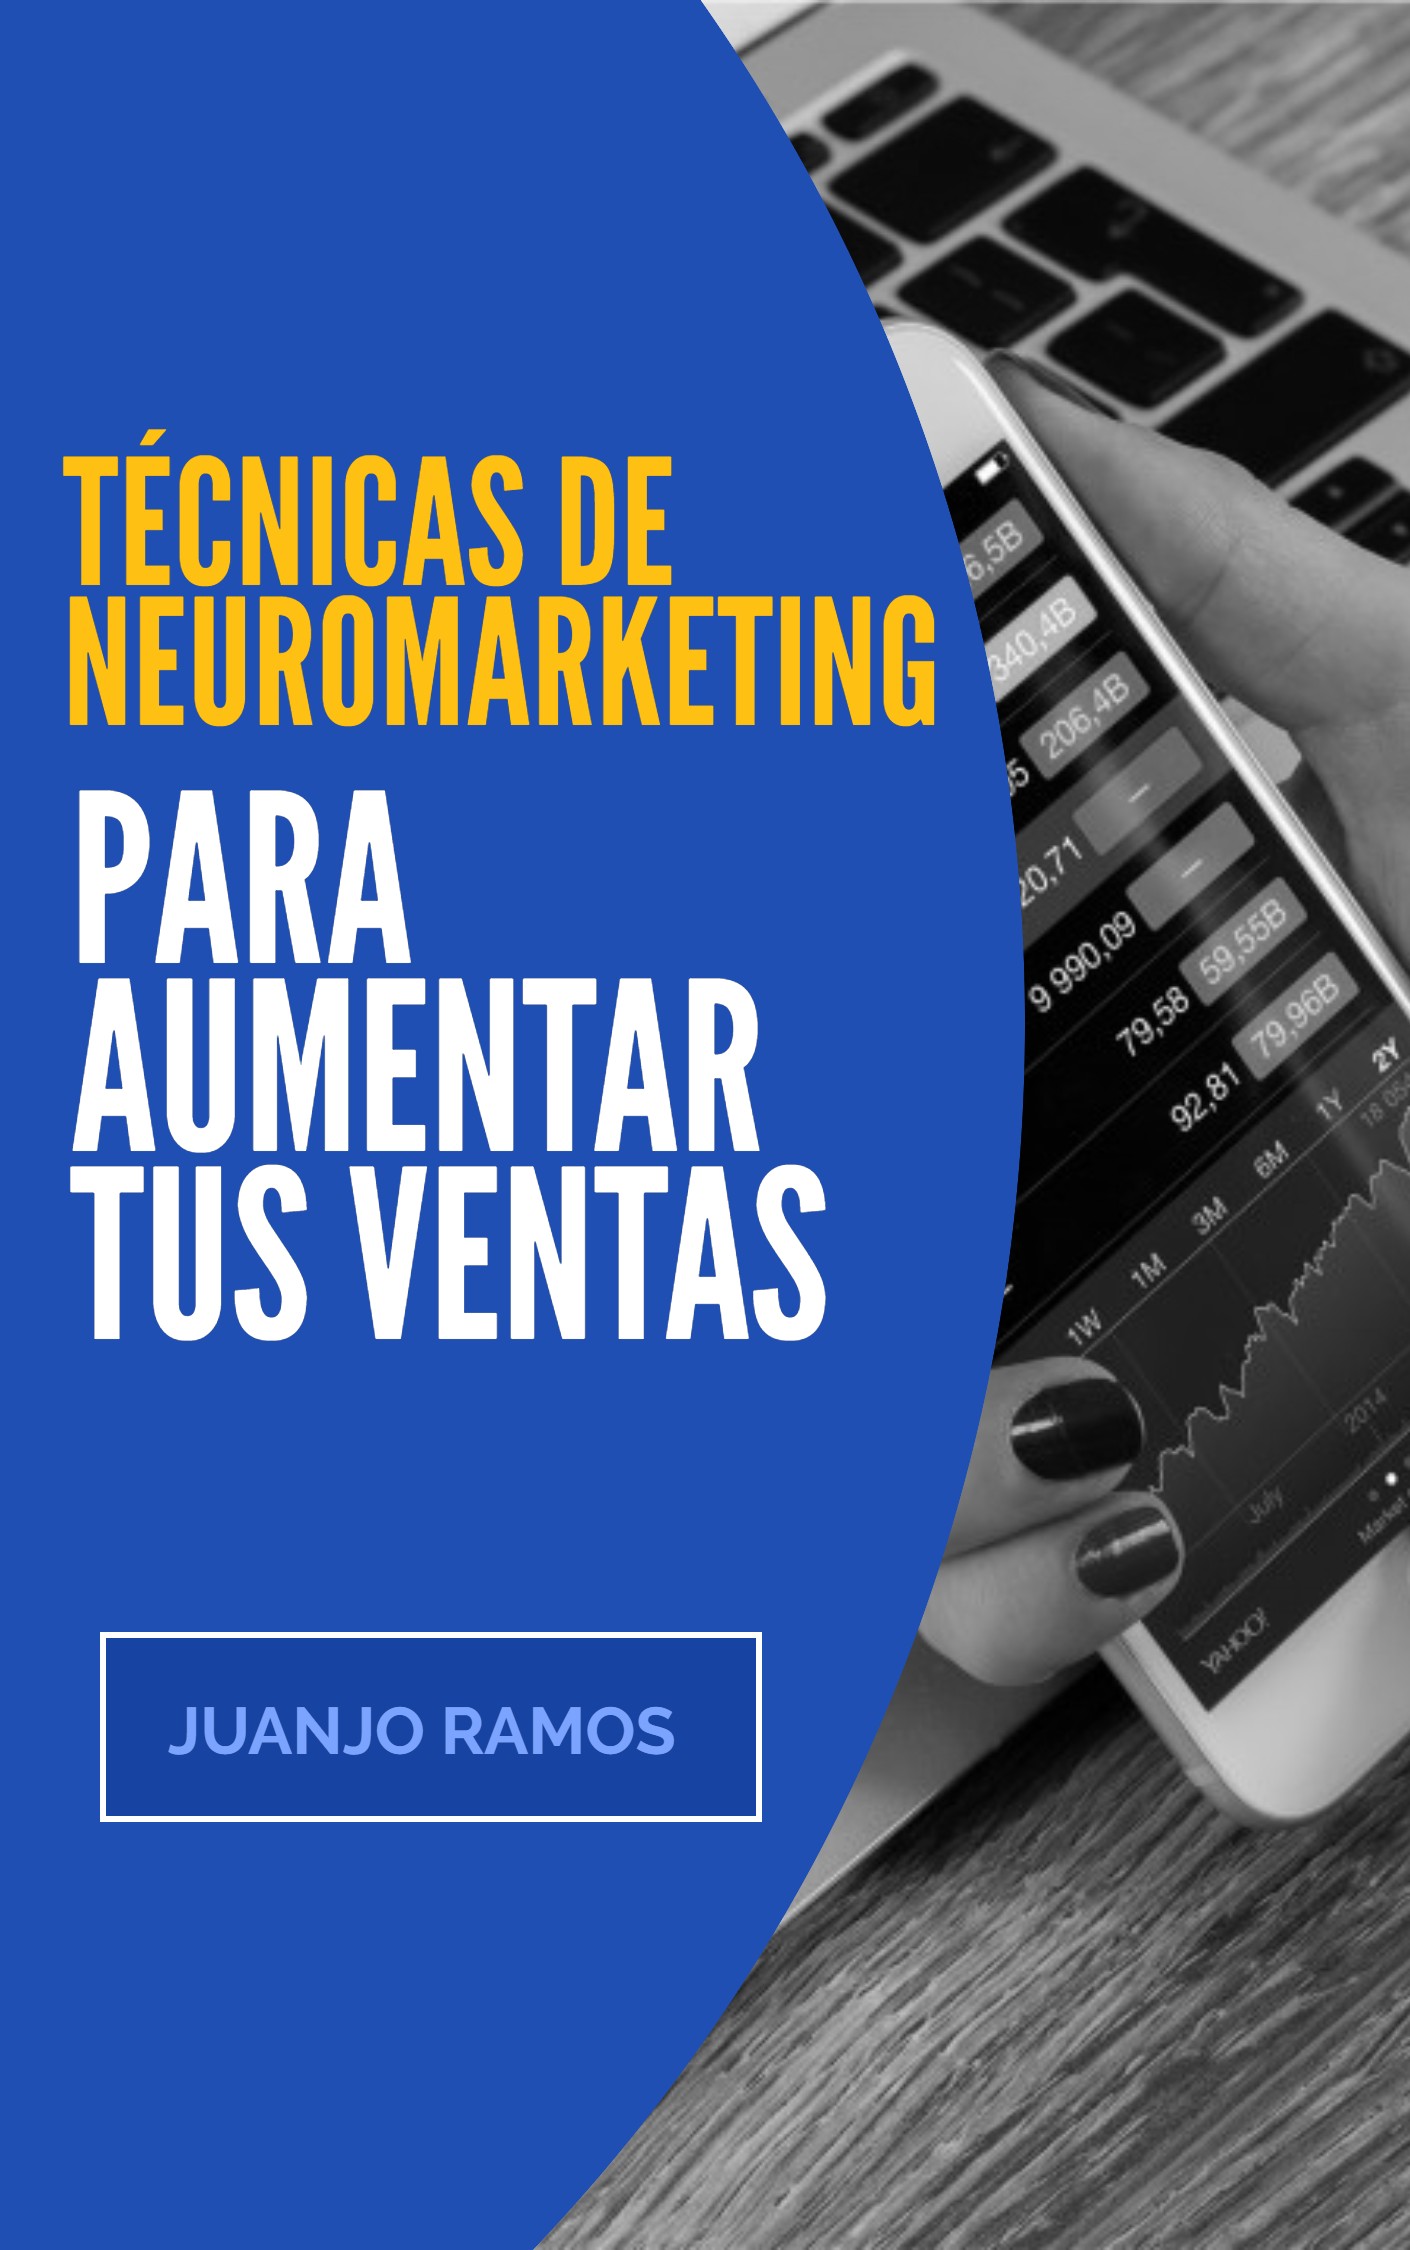 Técnicas de Neuromarketing para Incrementar Ventas - Todo SEO - Aprendermarketing.es